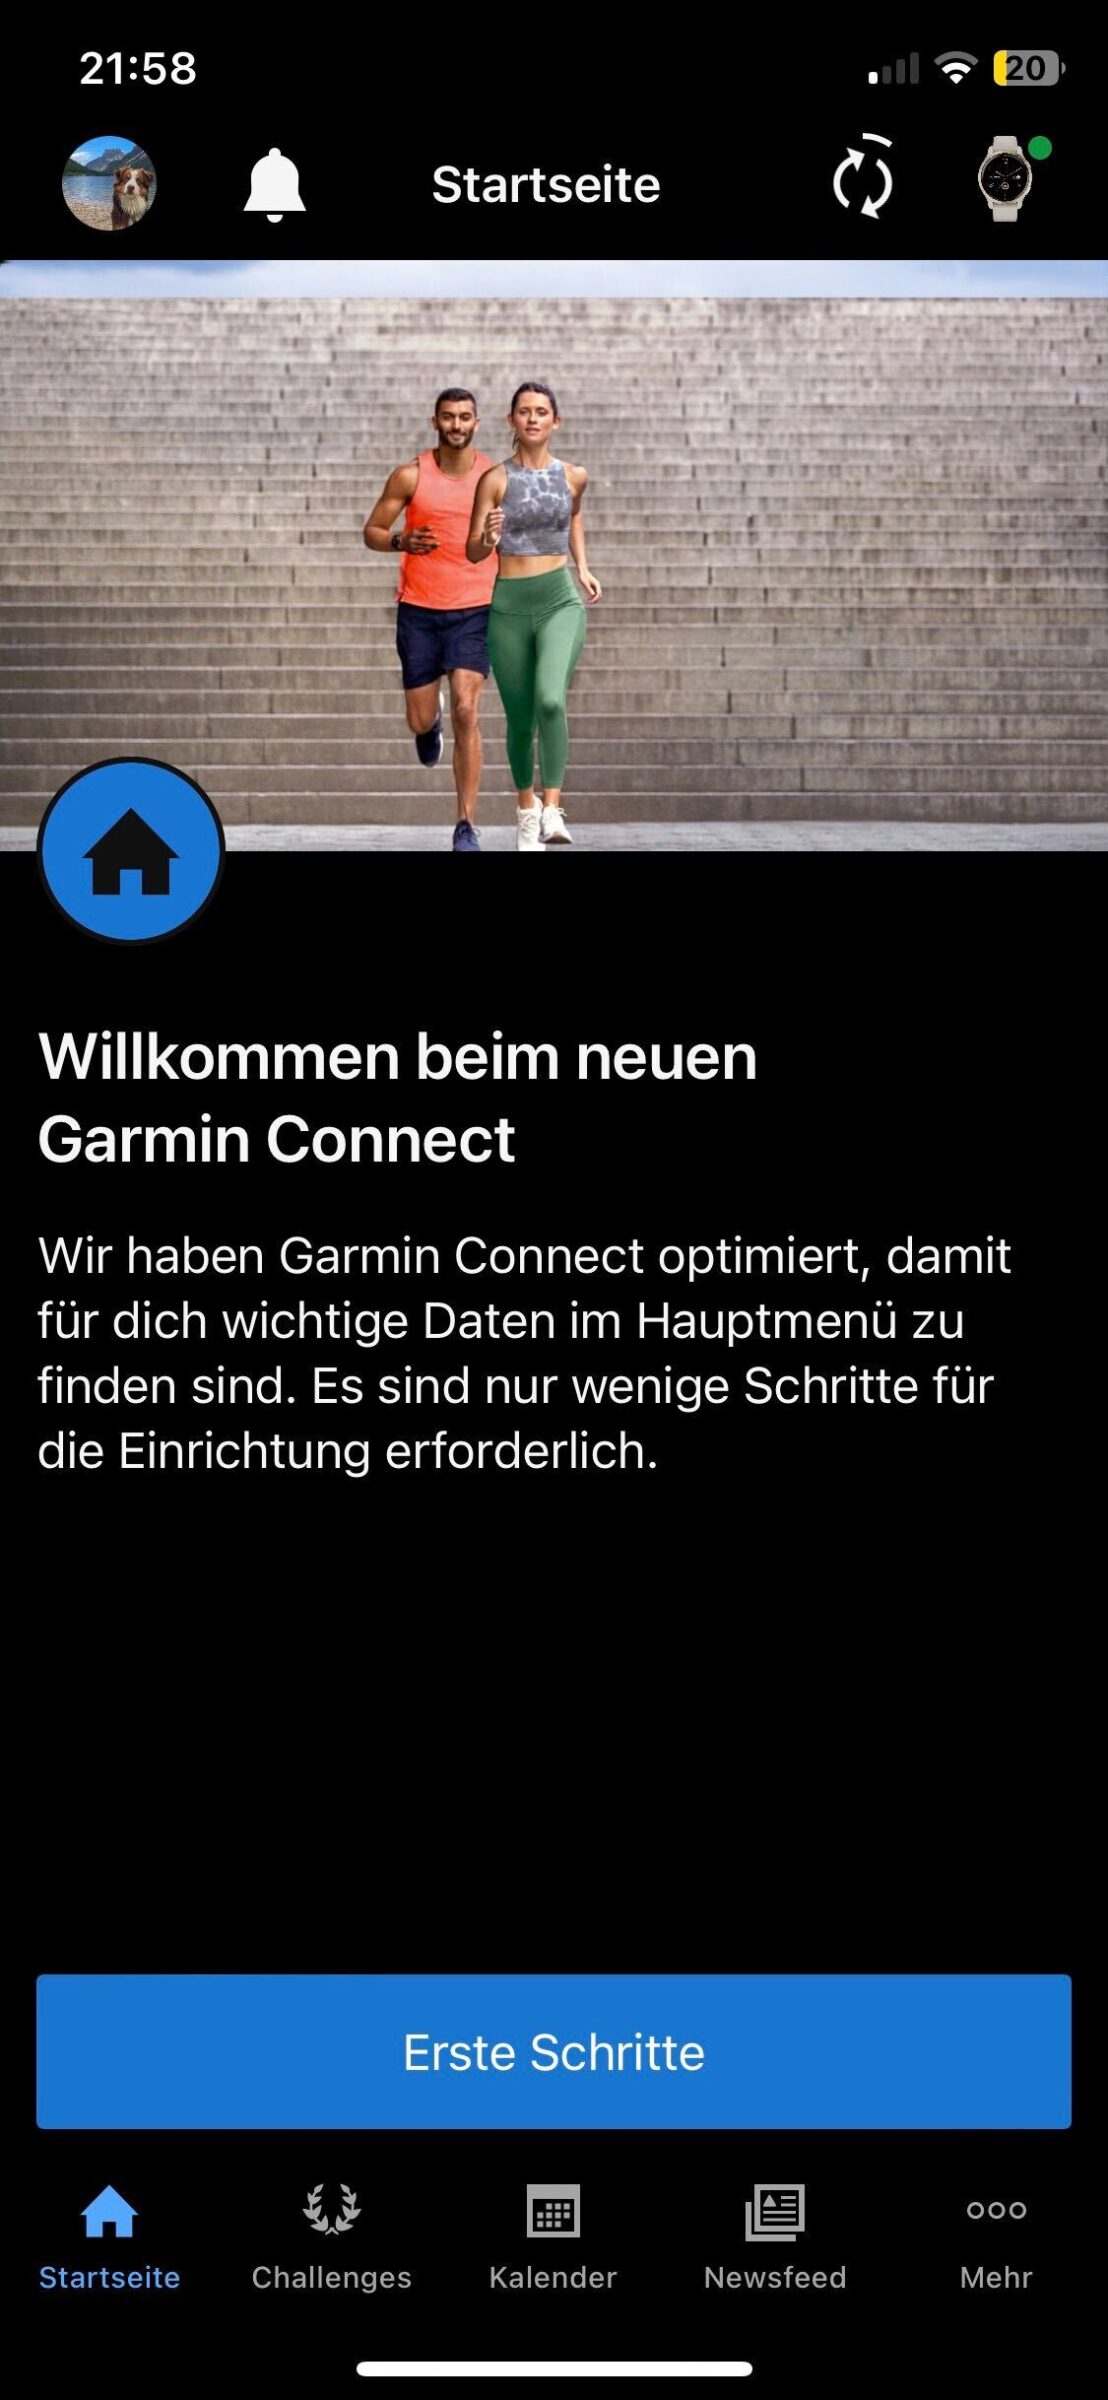 Garmin Connect 5.0 Willkommensbildschirm